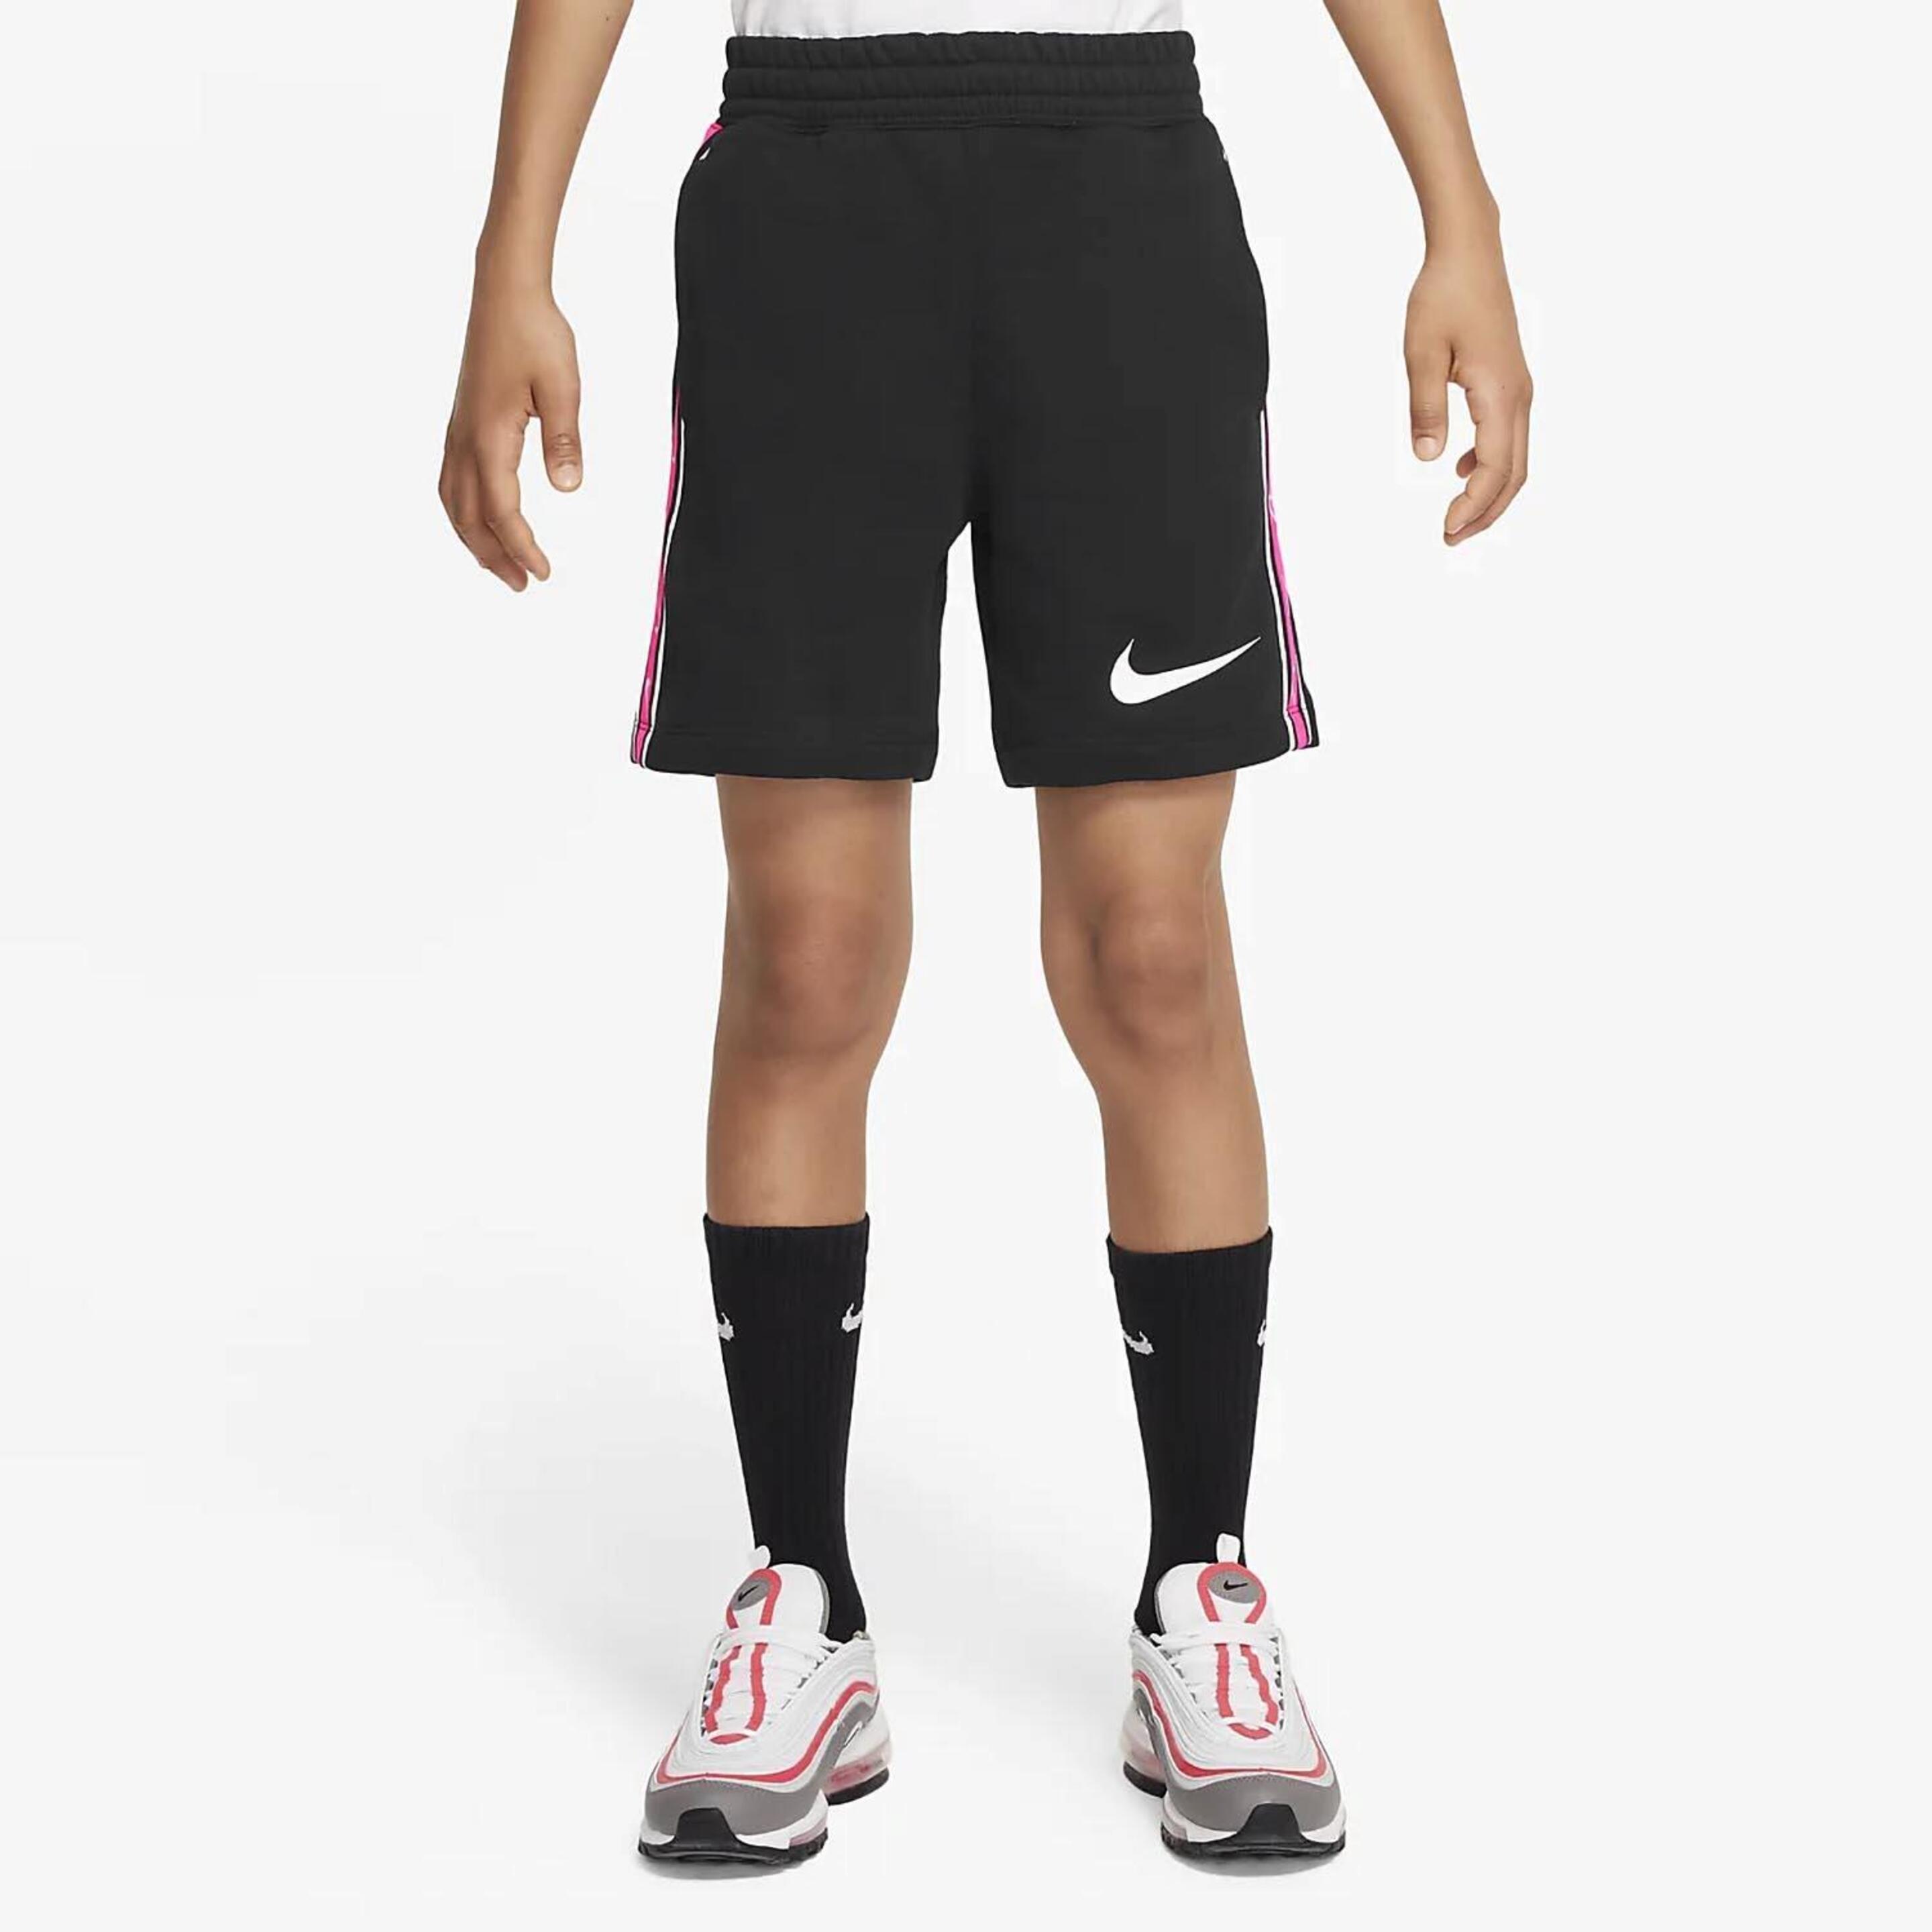 Calções Nike